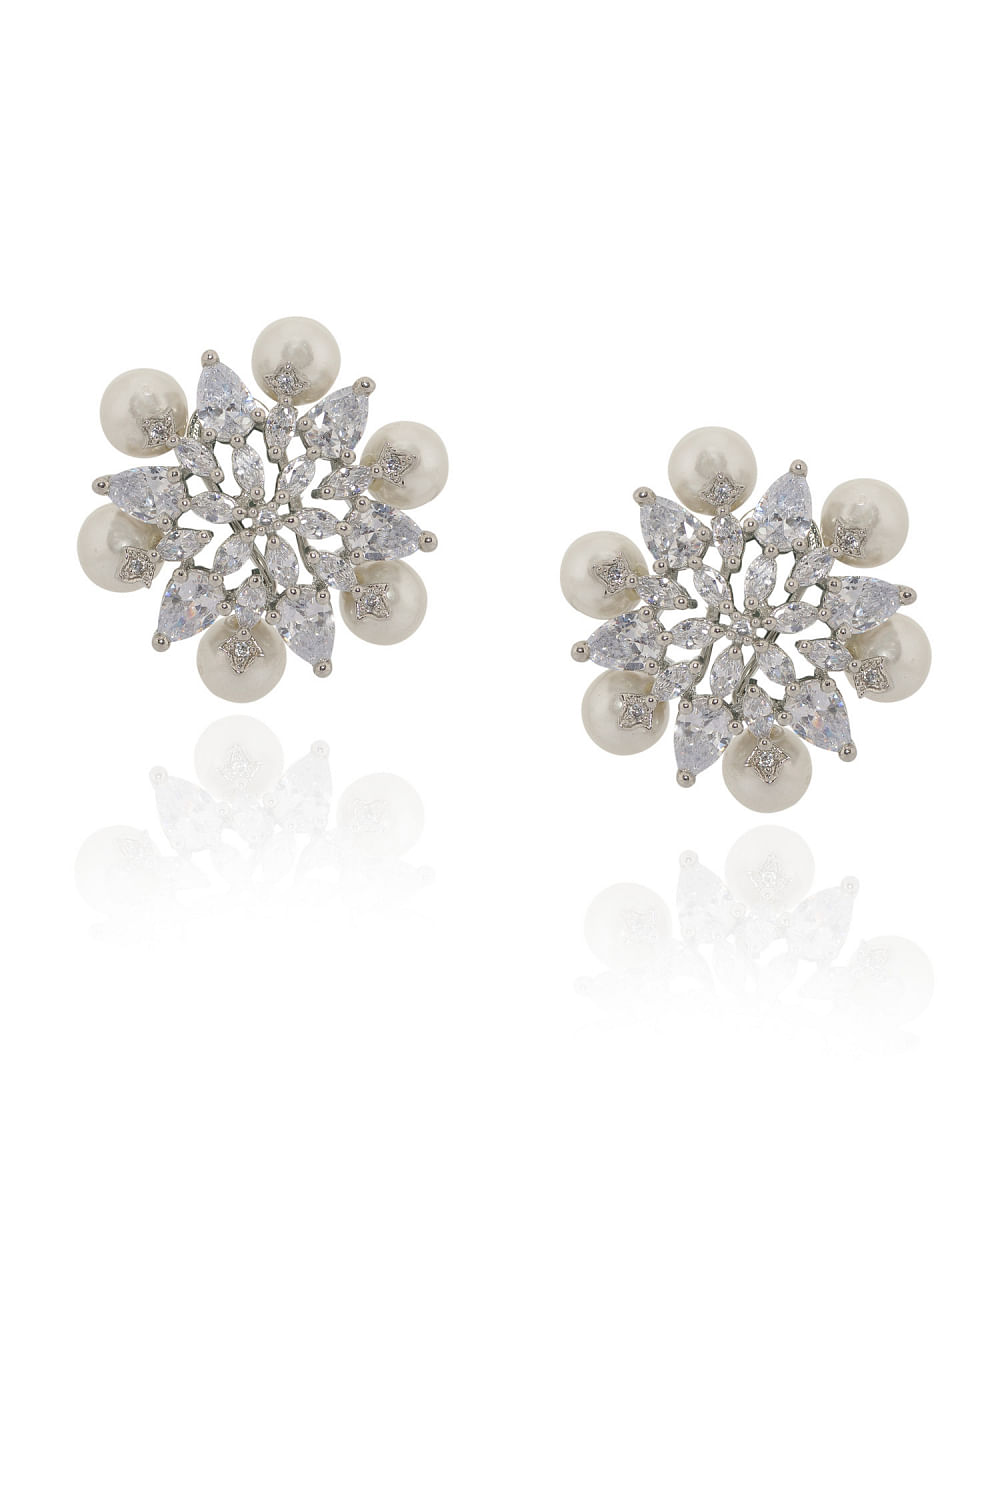 Aurelia | Simulated Diamond and Citrine Gemstone Stud Earrings –  ratnalijewels